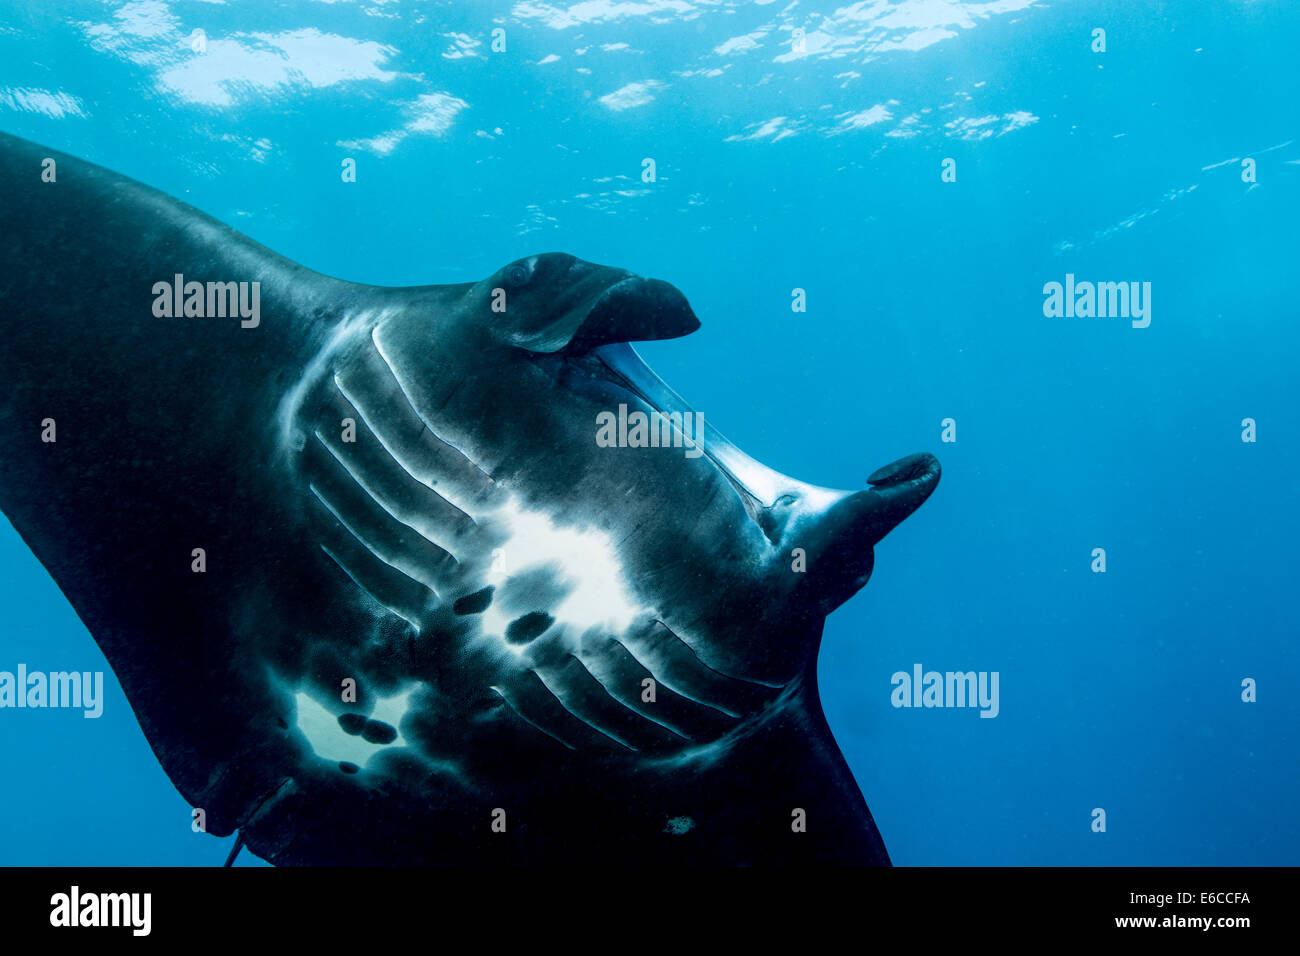 Giant manta ray, visto a Manta alley sito di immersione, Indonesia. Foto Stock